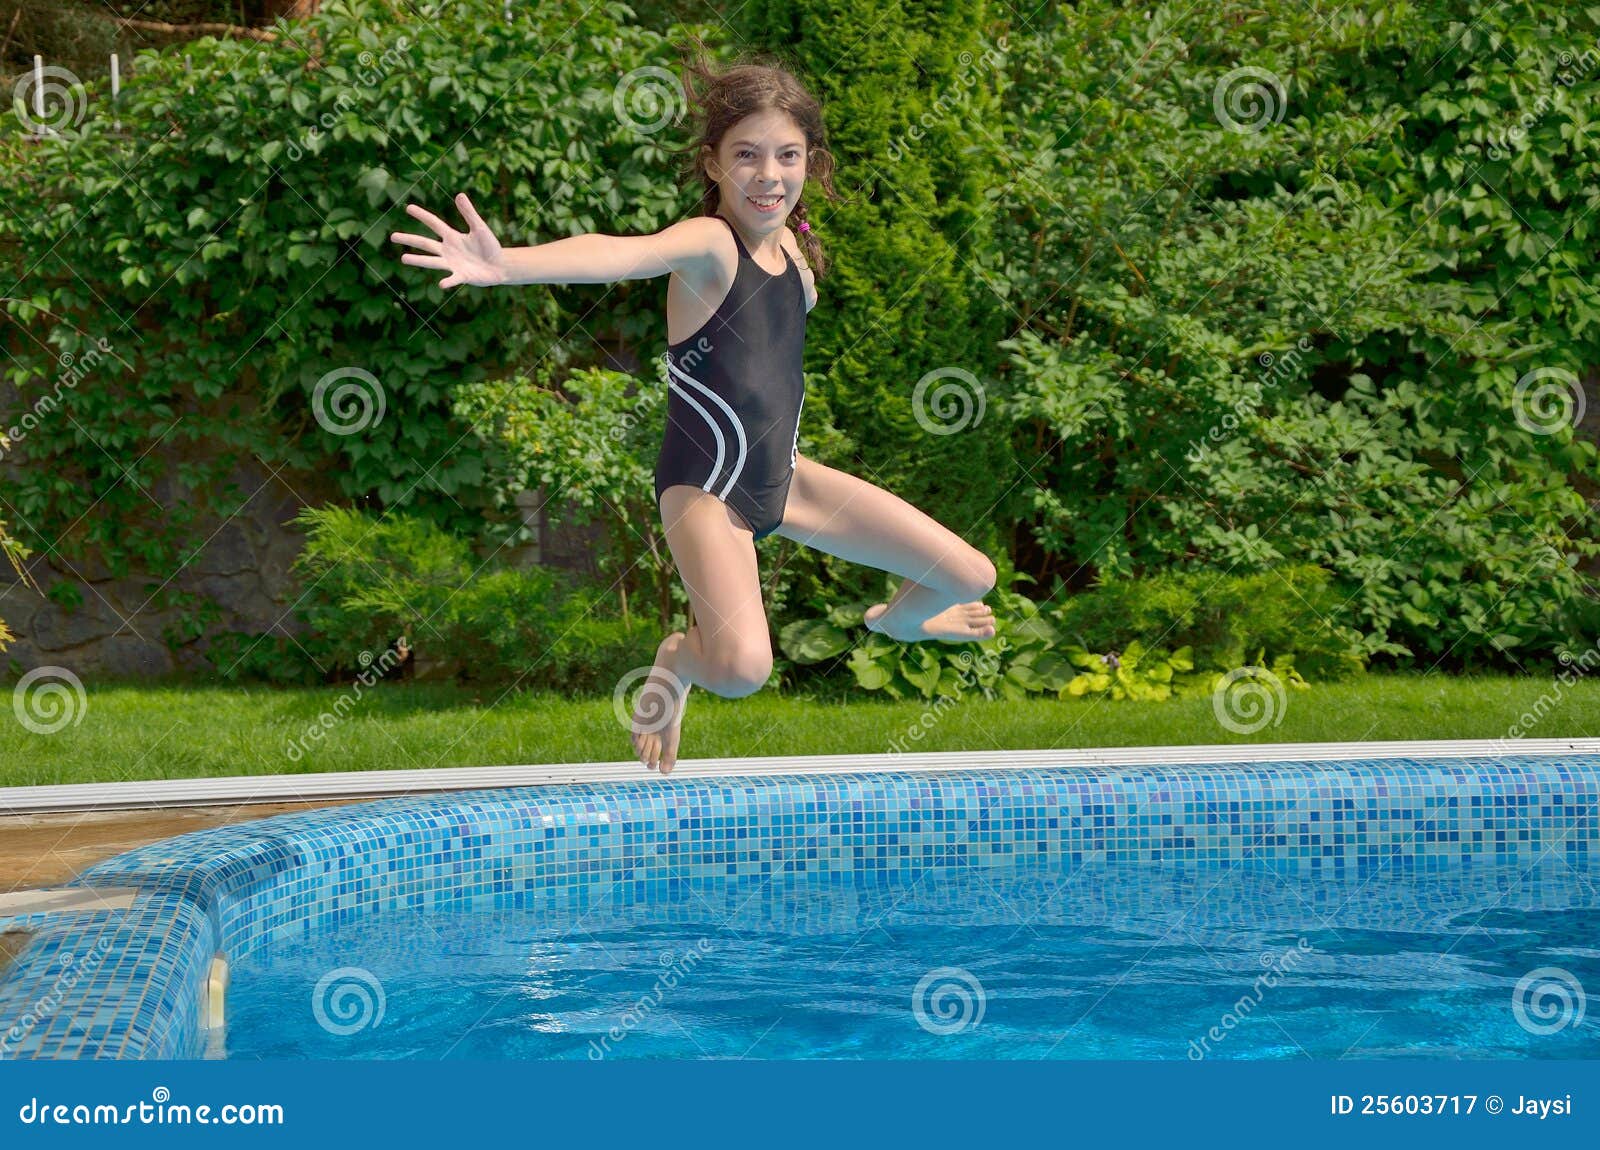 τα ενεργά ευτυχή άλματα παιδιών συγκεντρώνουν την κολύμβηση. όμορφο κορίτσι διασκέδασης που έχει τα κατσίκια διακοπών που χαμογελούν τις διακοπές αθλητικού καλοκαιριού